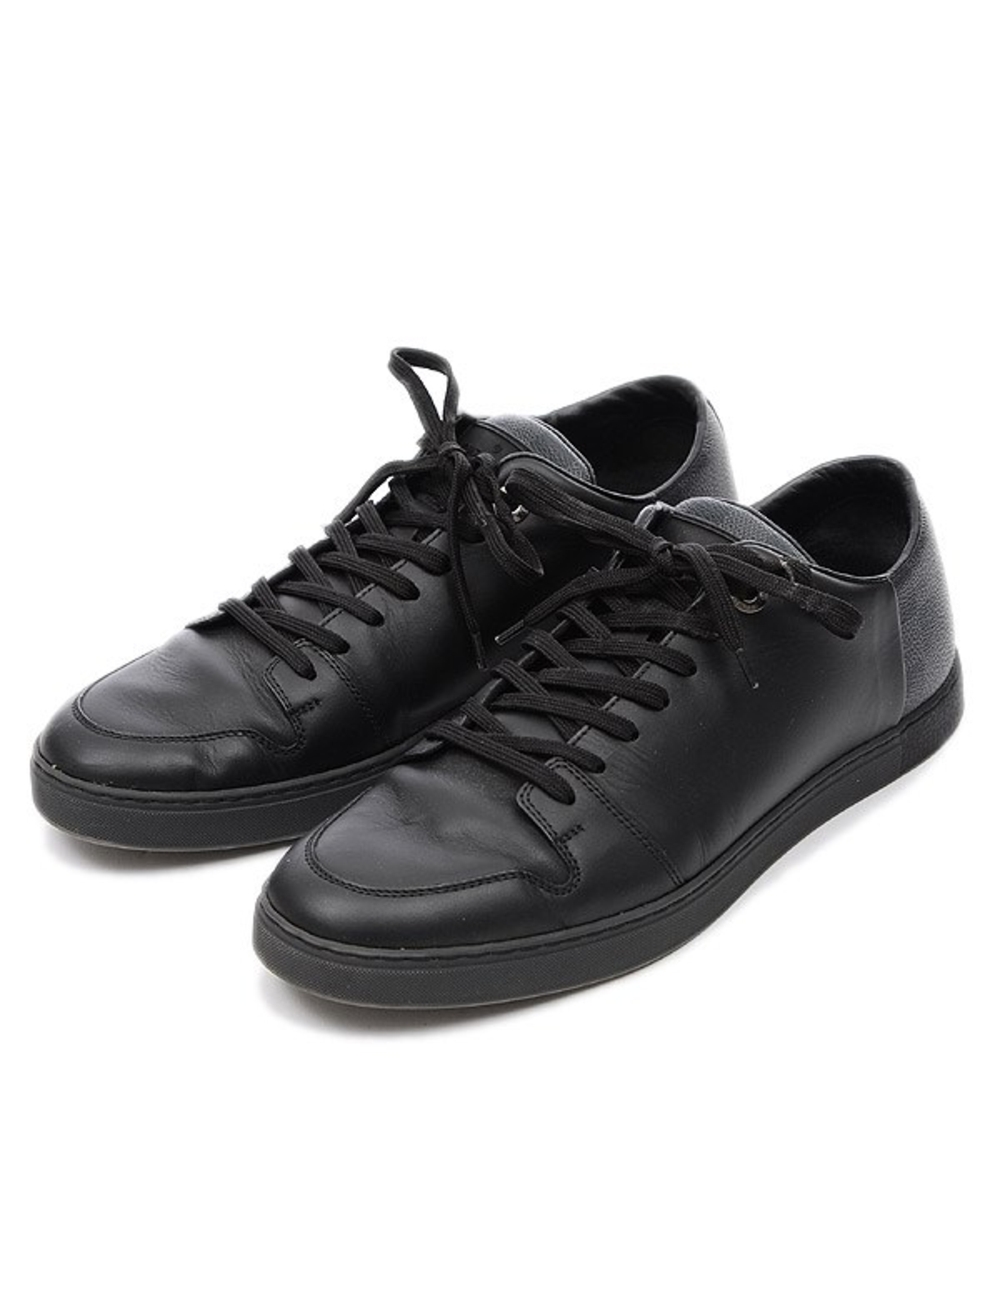 [產品信息] 品牌：LOUIS VUITTON Type：Line Up石墨低幫運動鞋男式＃6 編號：MS0136 編號：MS0136 性別：男 顏色：黑色 重量：790g [條件] 等級：薄荷 鞋底